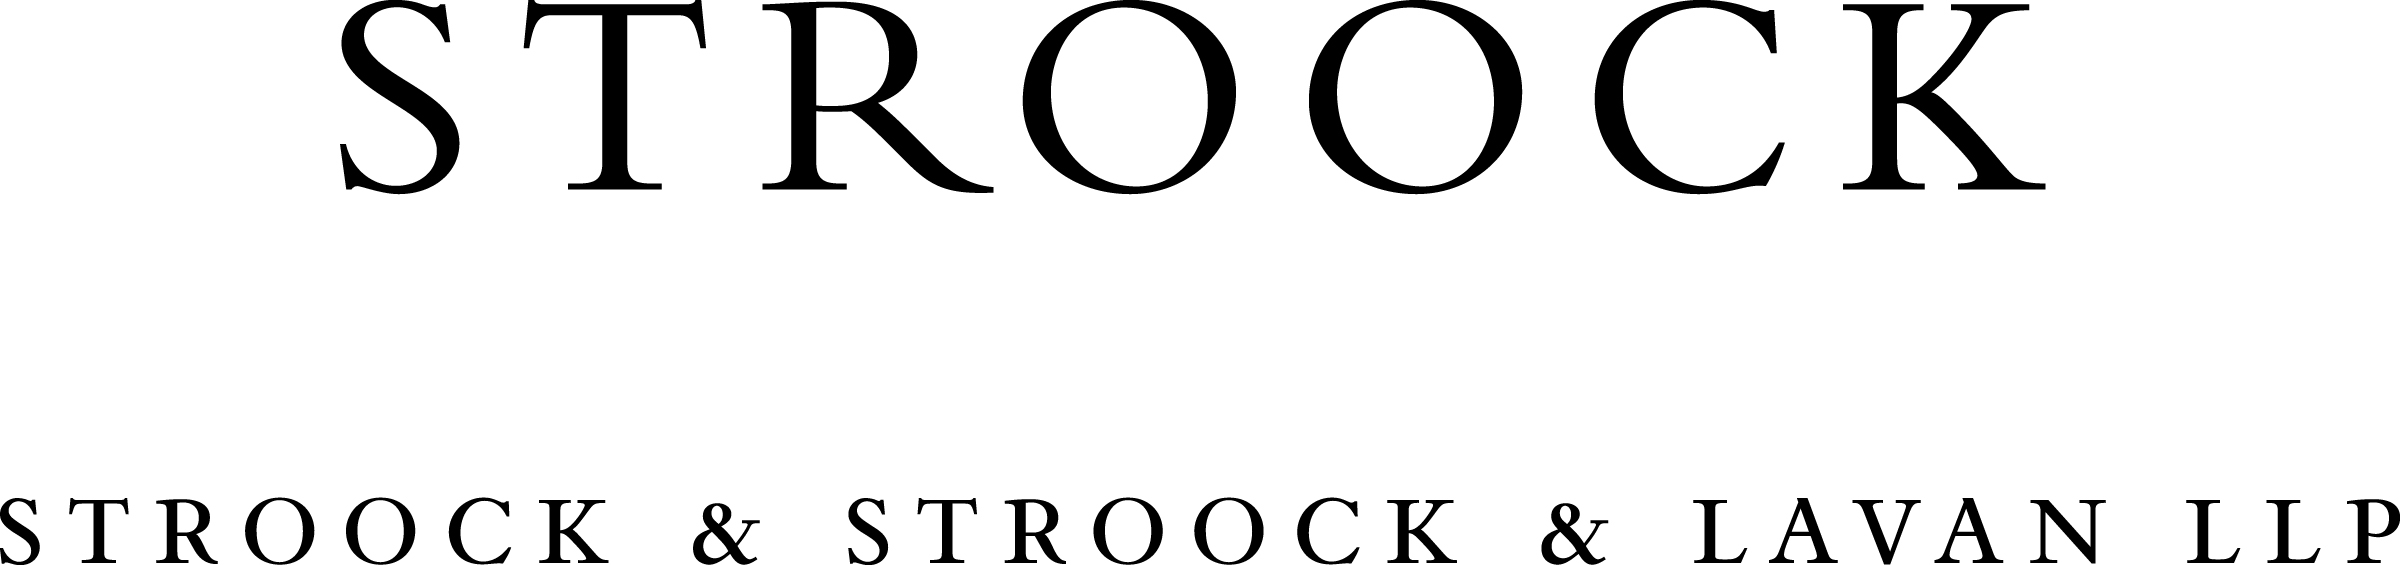 Stroock & Stroock & Lavan Law Firm